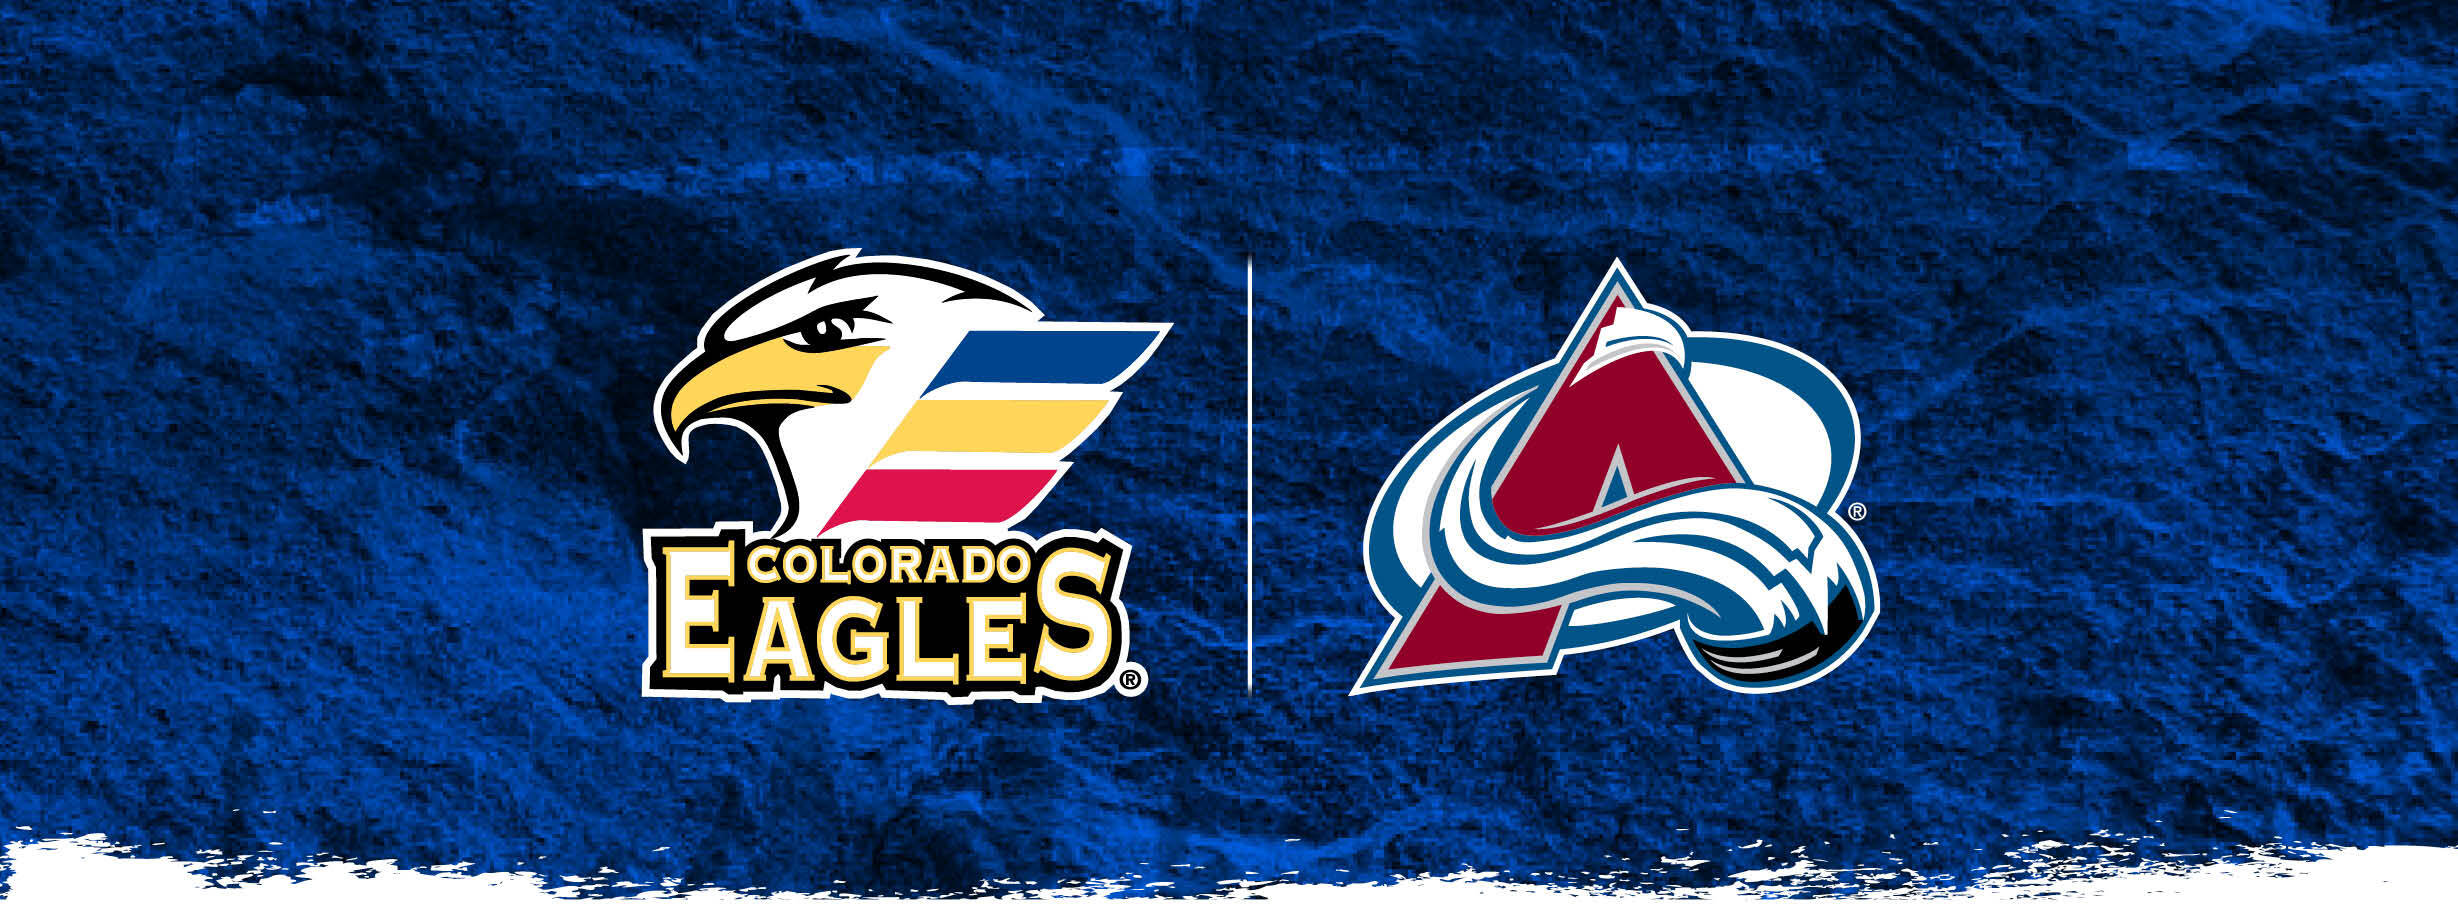 Colorado Eagles update new 'Colorado Sky' uniforms - Colorado Hockey Now